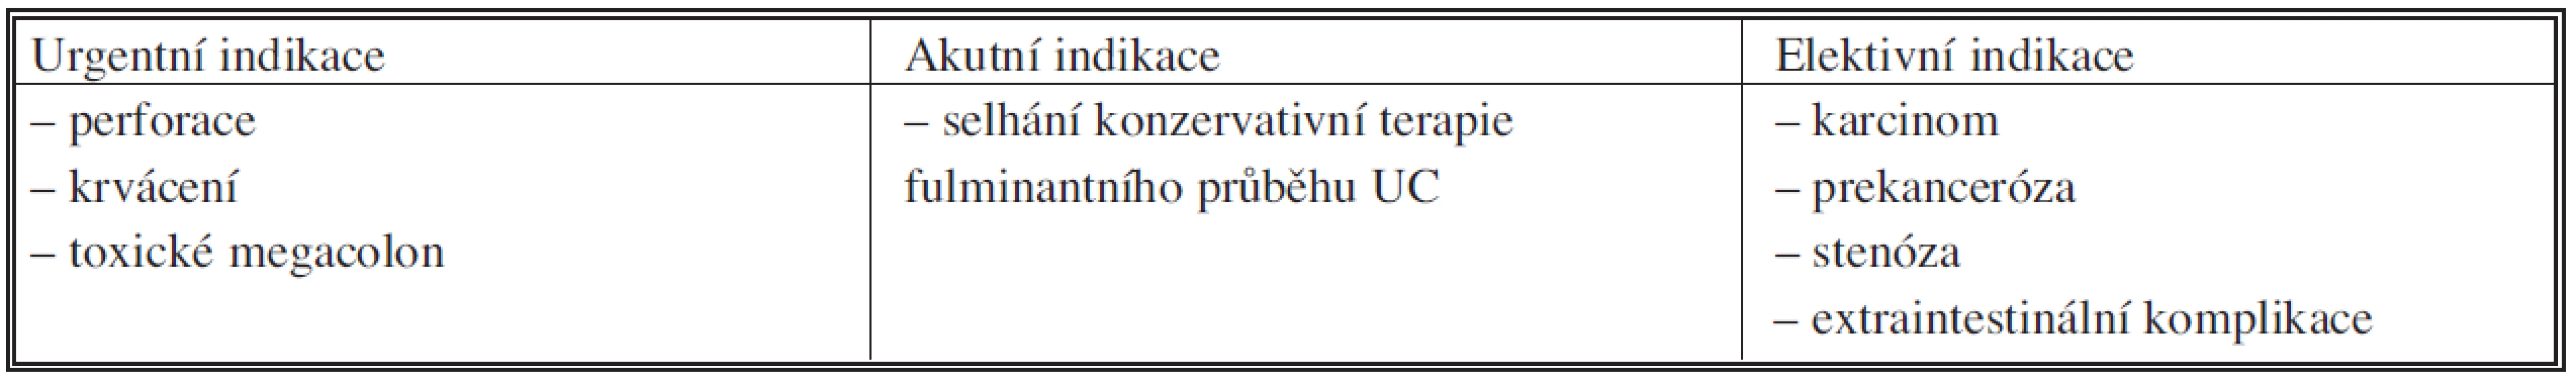 Indikace k chirurgické léčbě ulcerózní kolitidy
Tab. 6. Indication for surgery in ulcerative colitis